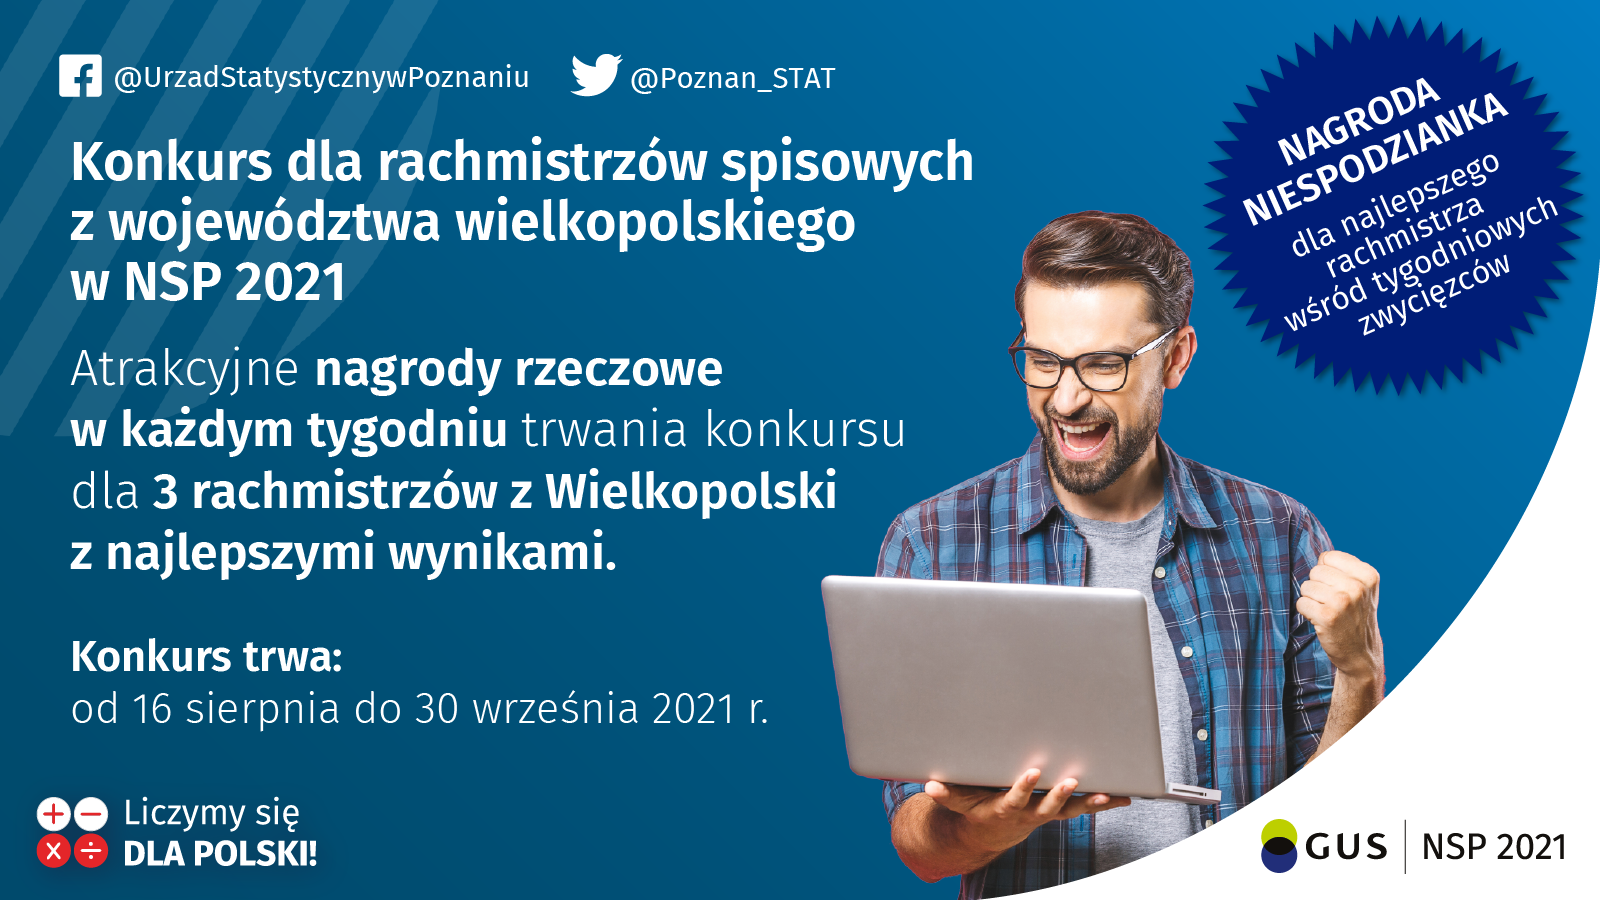 Plakat promujący konkurs dla rachmistrzów spisowych z województwa wielkopolskiego w NSP 2021